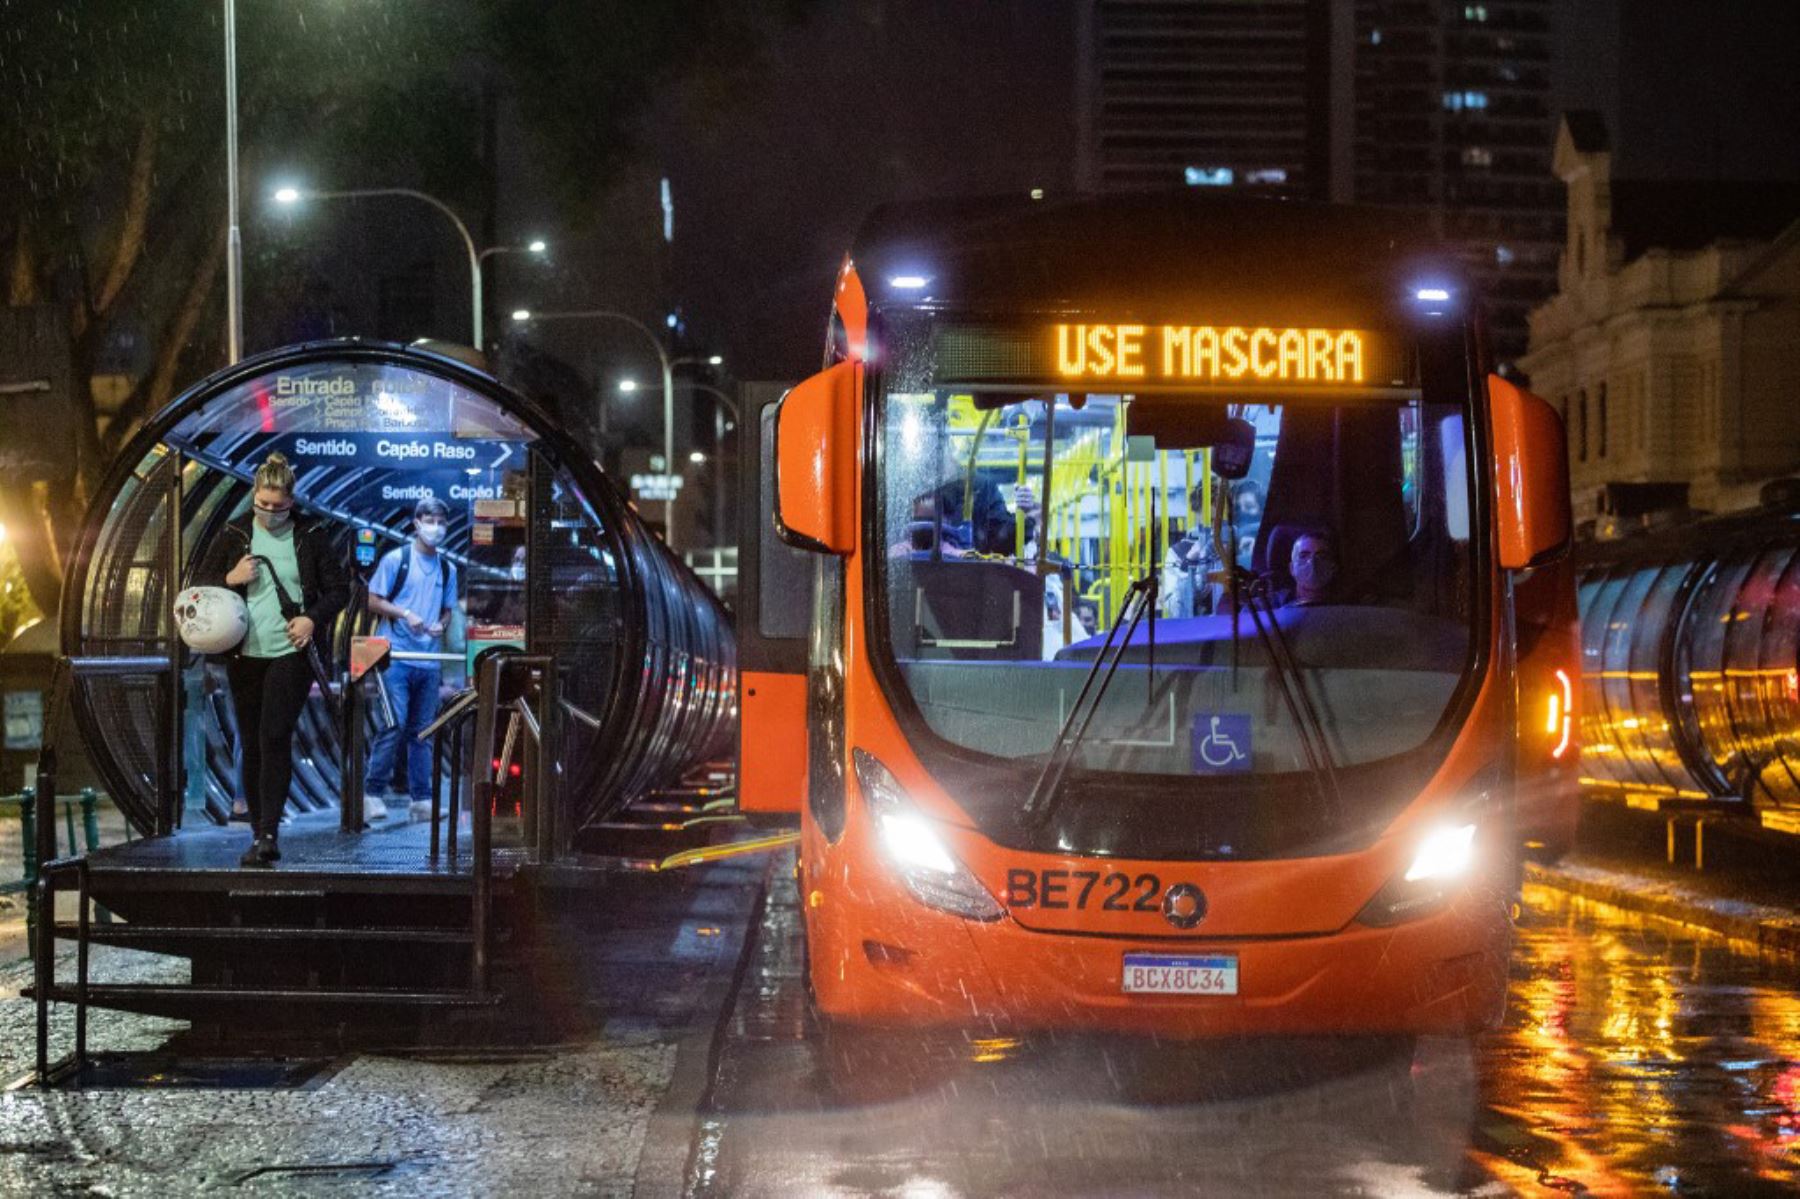 Vista del autobús público con un letrero electrónico que dice "Use una máscara facial", en Curitiba, Brasil.
Foto: AFP